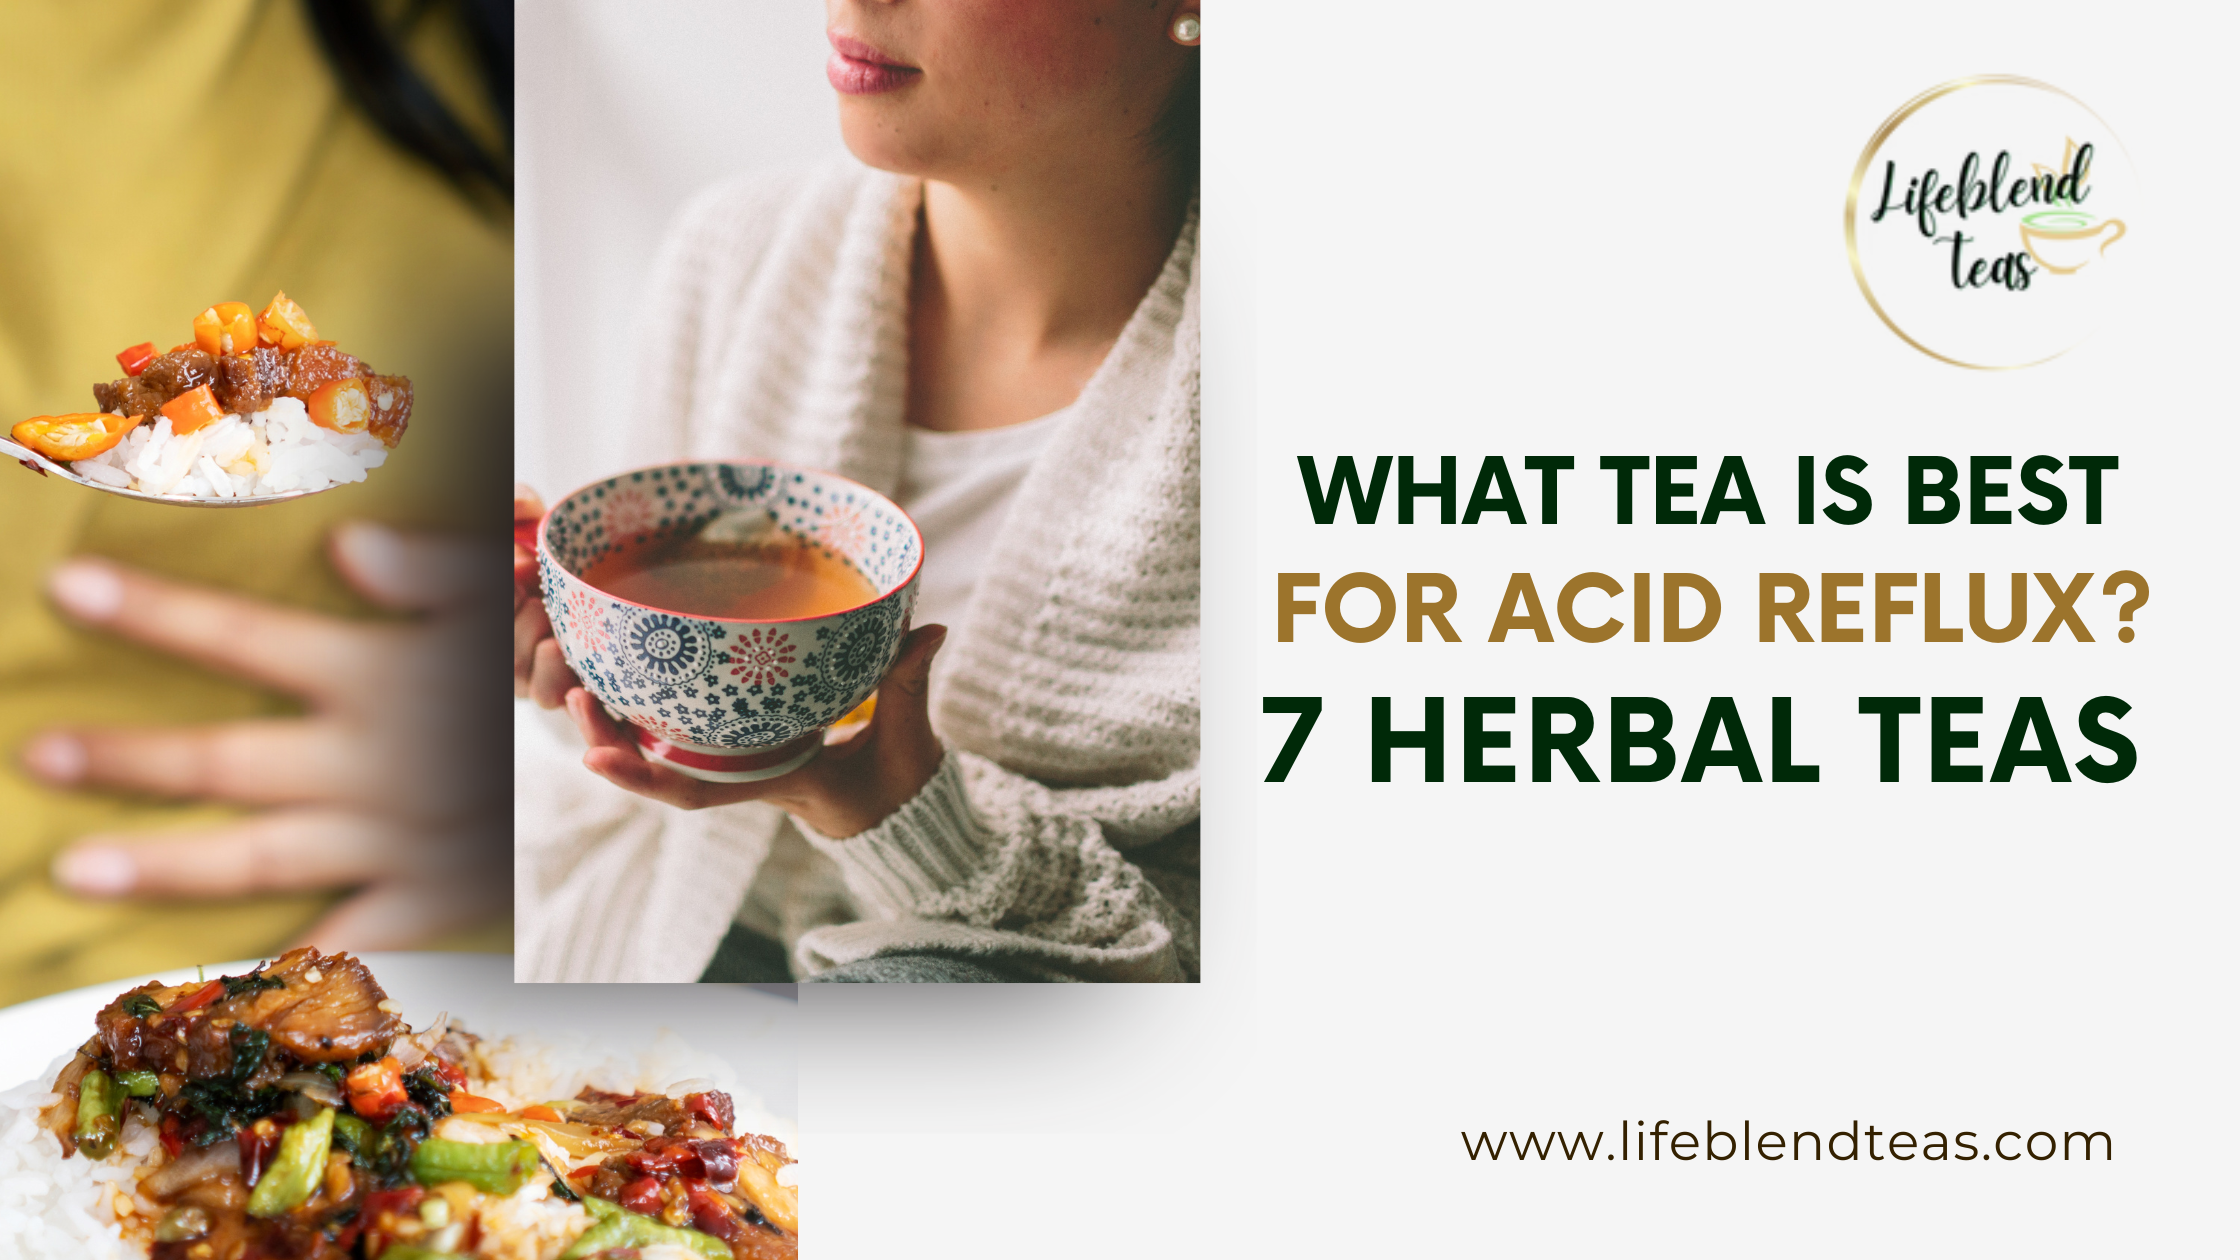 What Tea is Best for Acid Reflux - 7 Herbal Teas